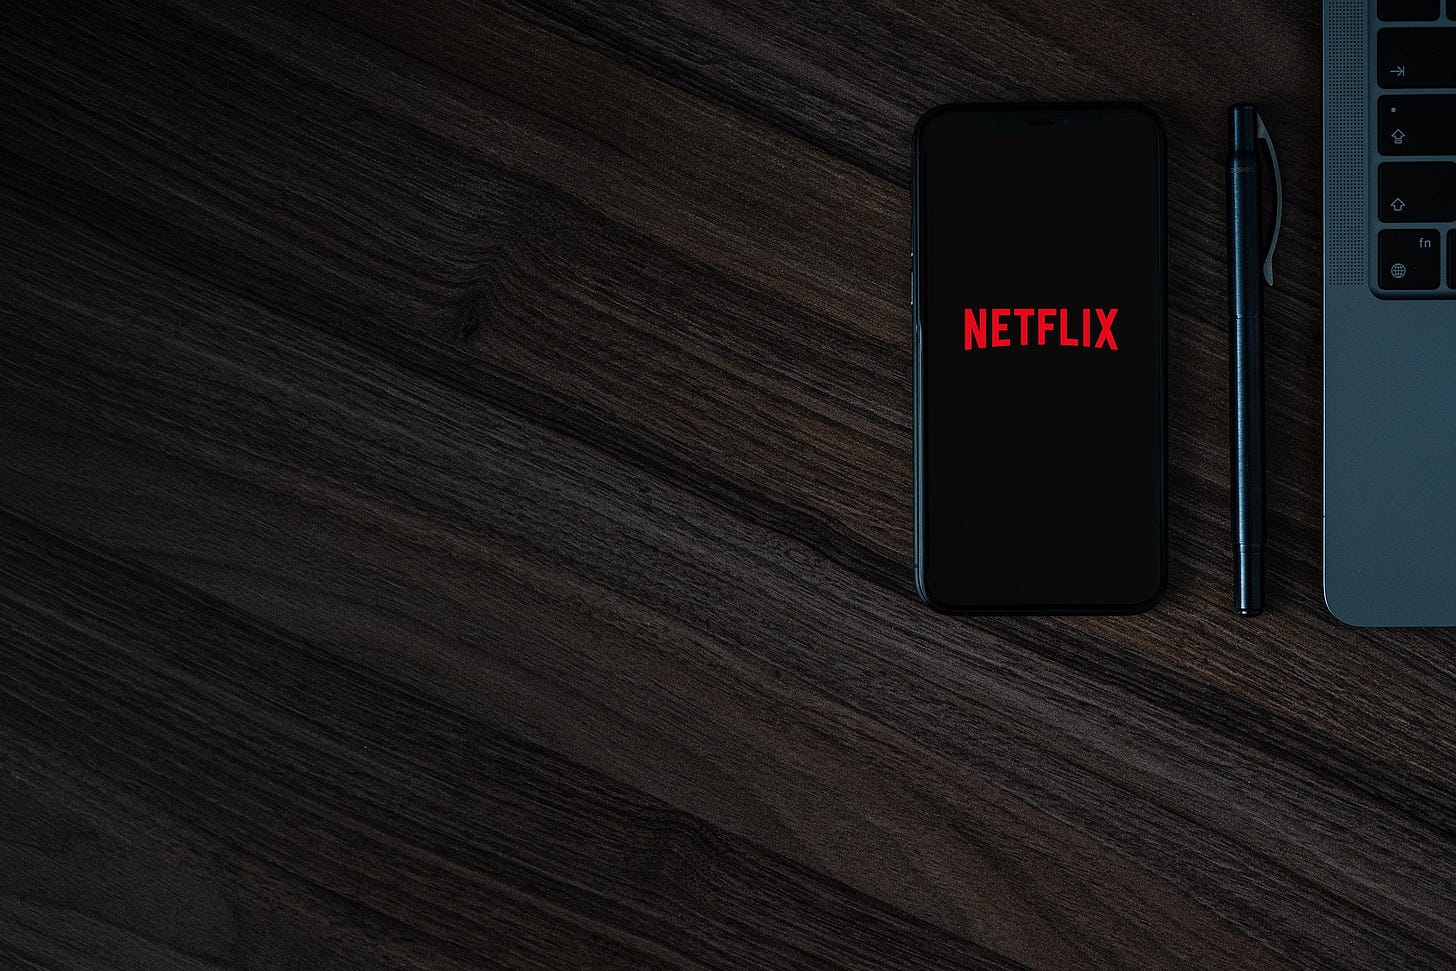 Image of smartphone displaying Netflix logo